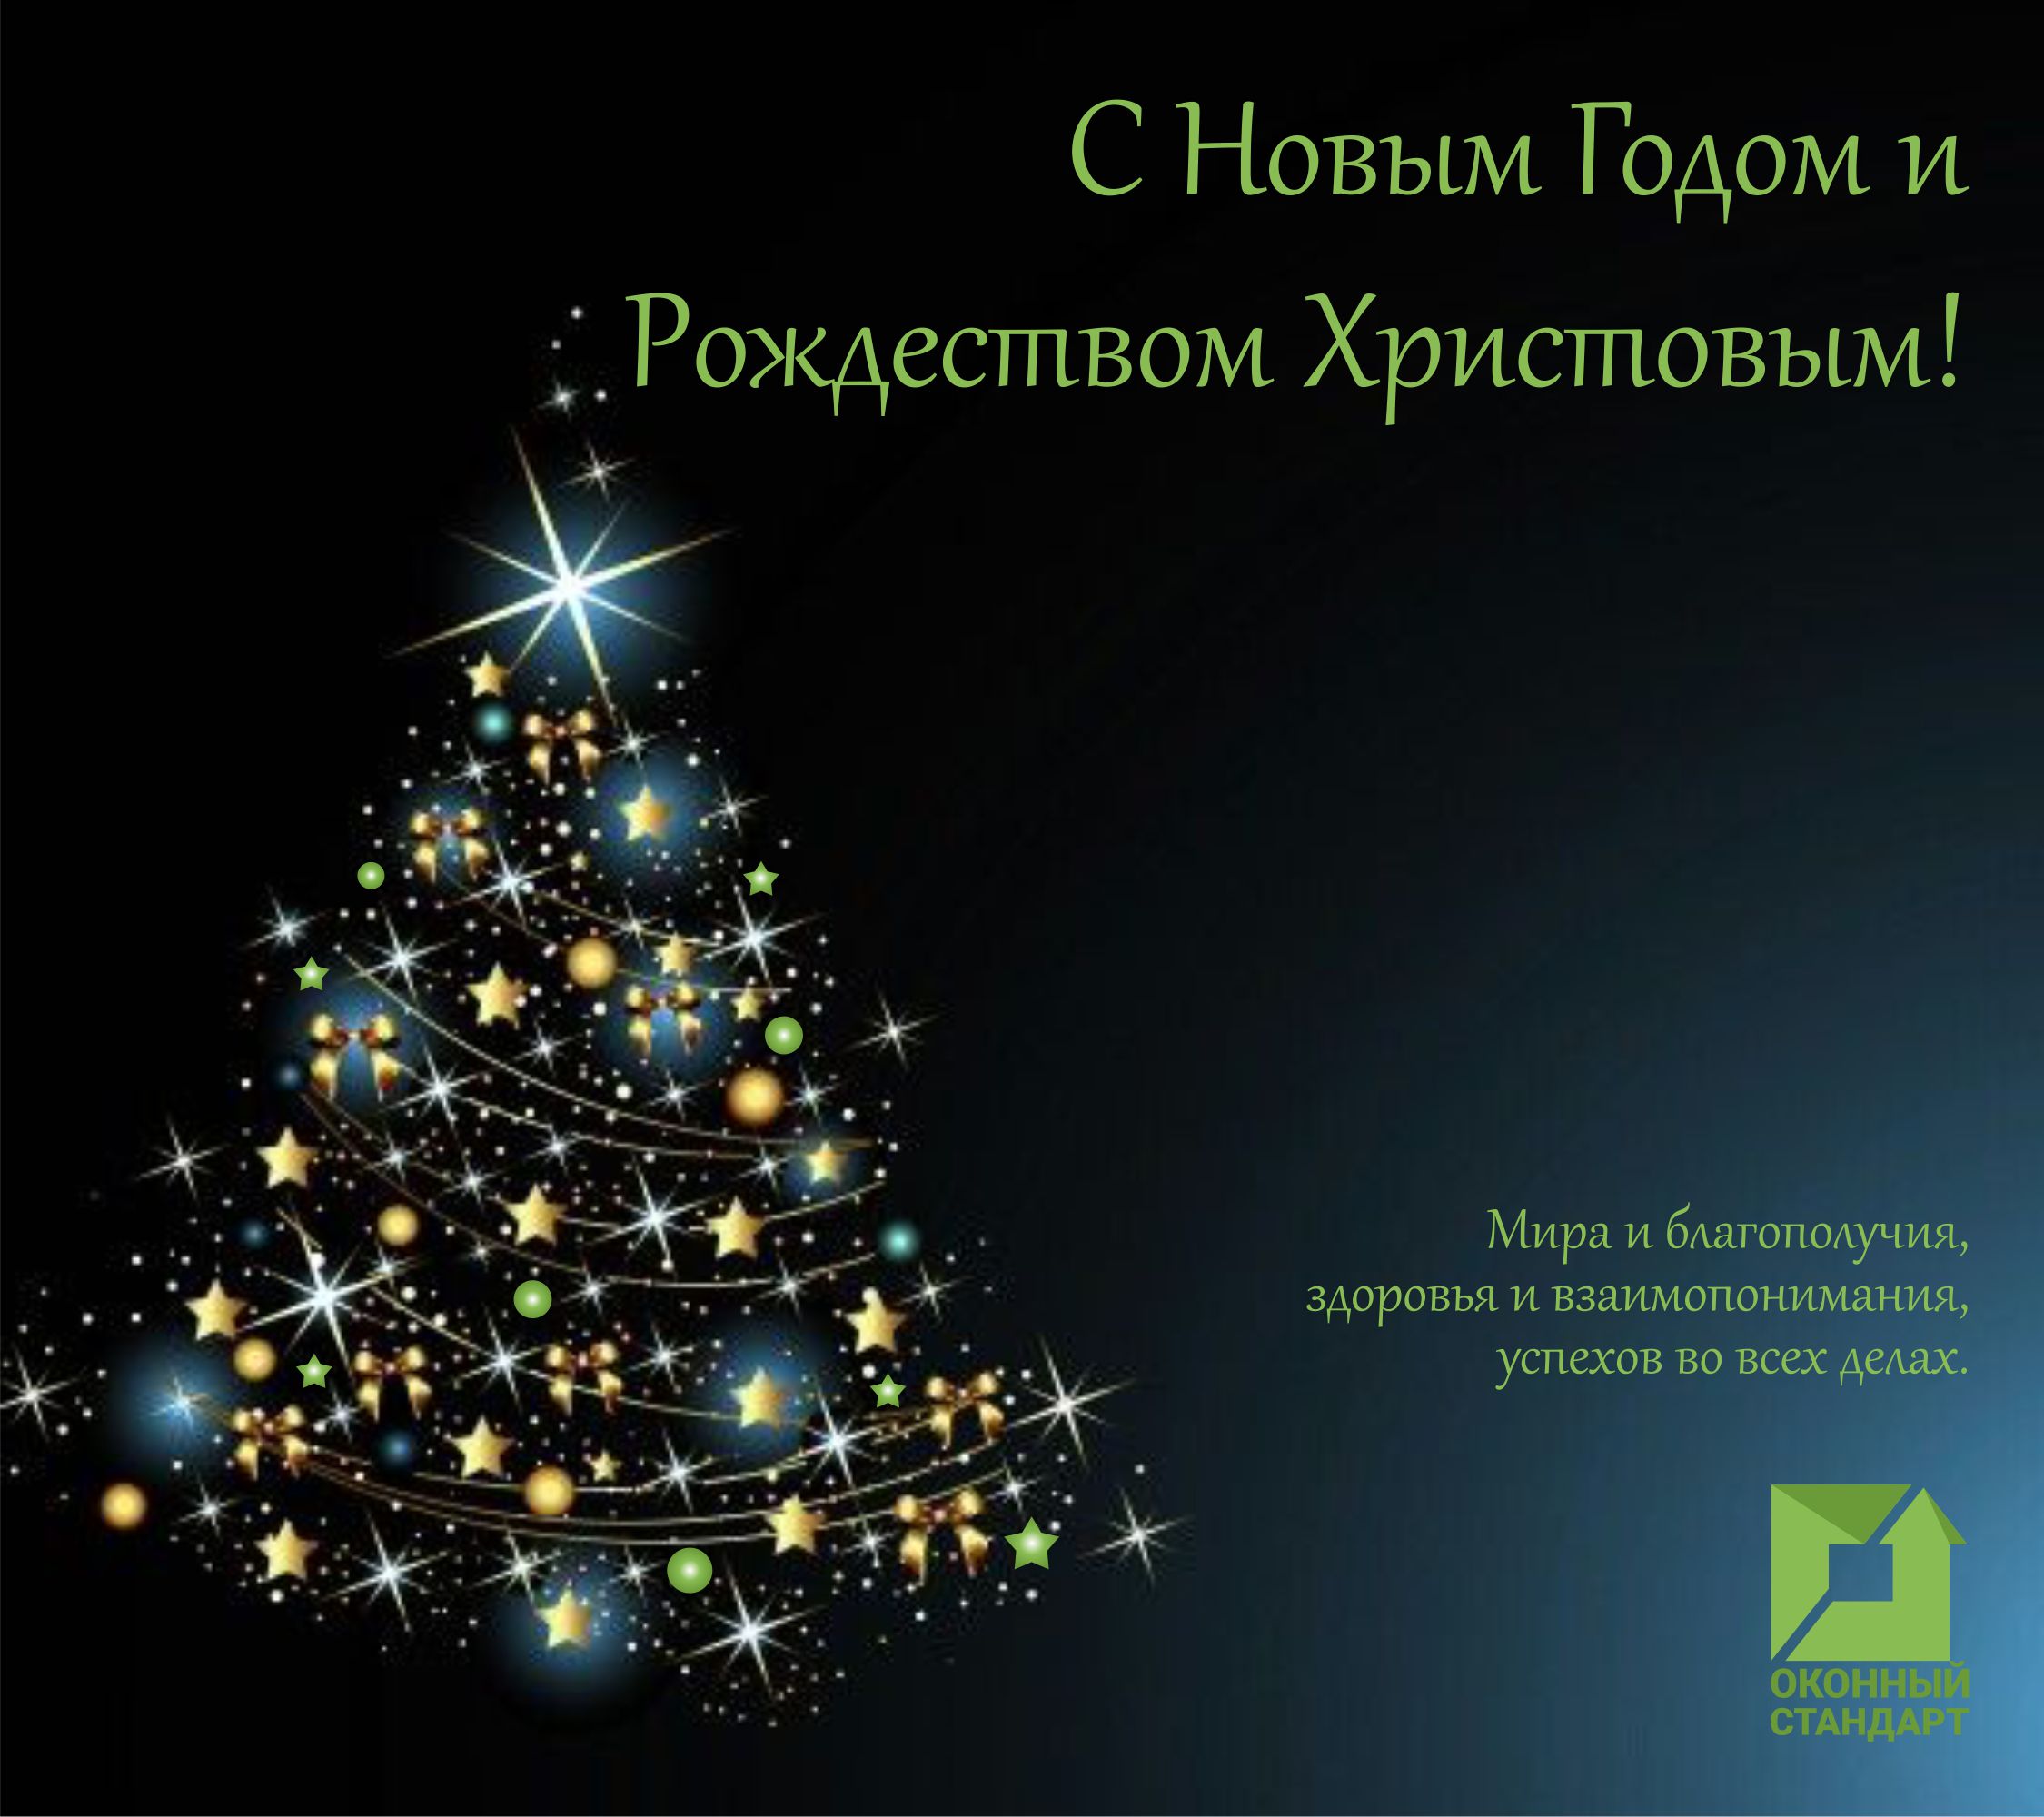 С Новым Годом и Рождеством Христовым!